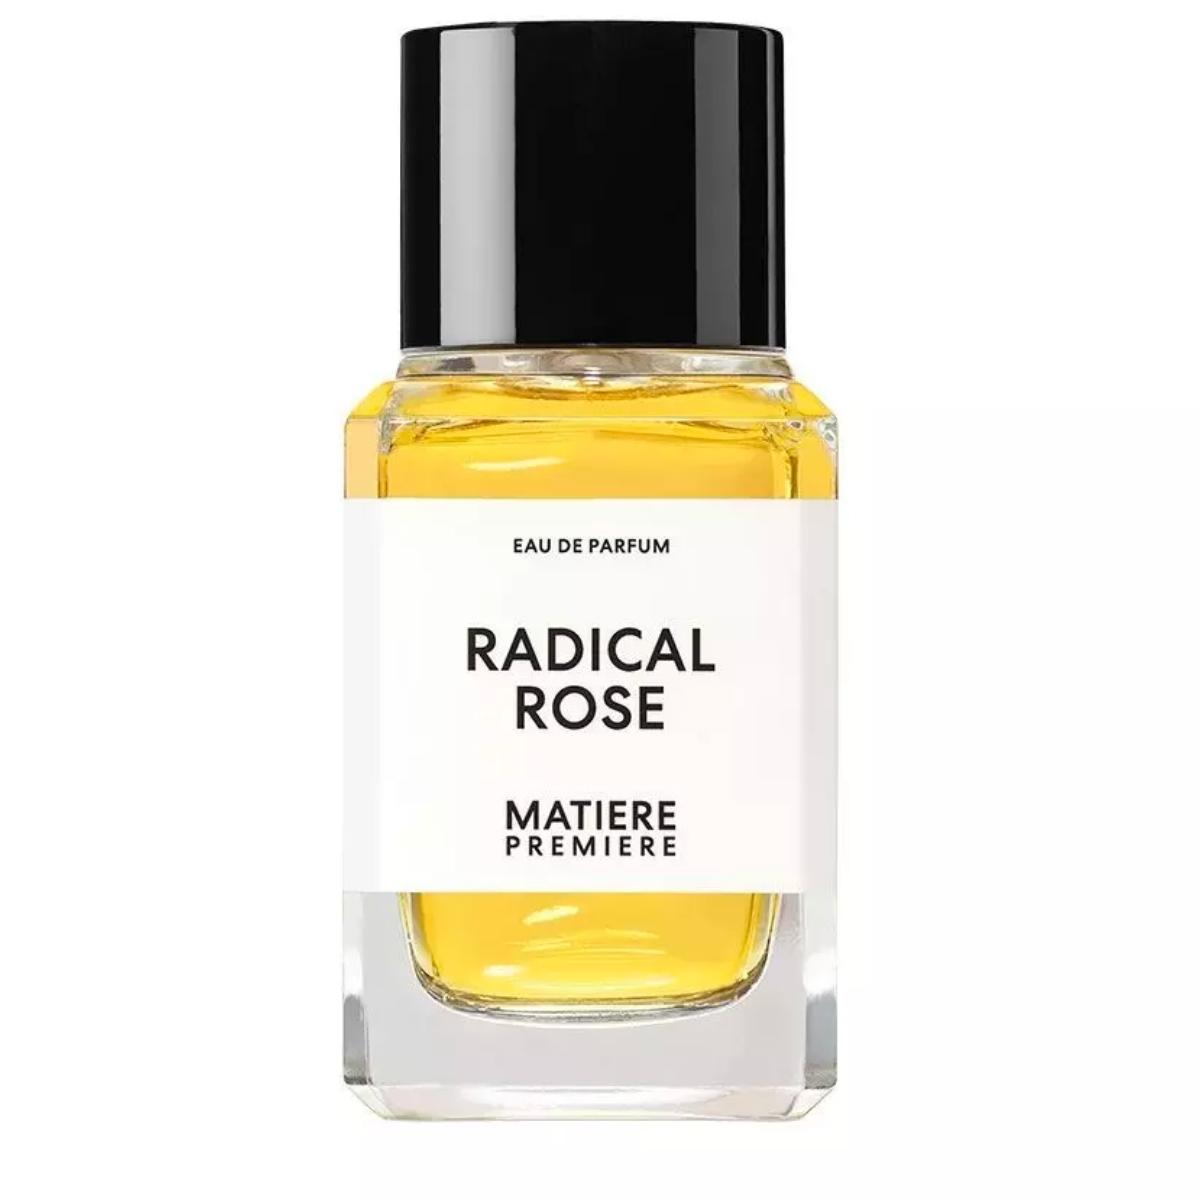 Matiere Premiere Radical Rose - Eau de Parfum Unisex Fragrance